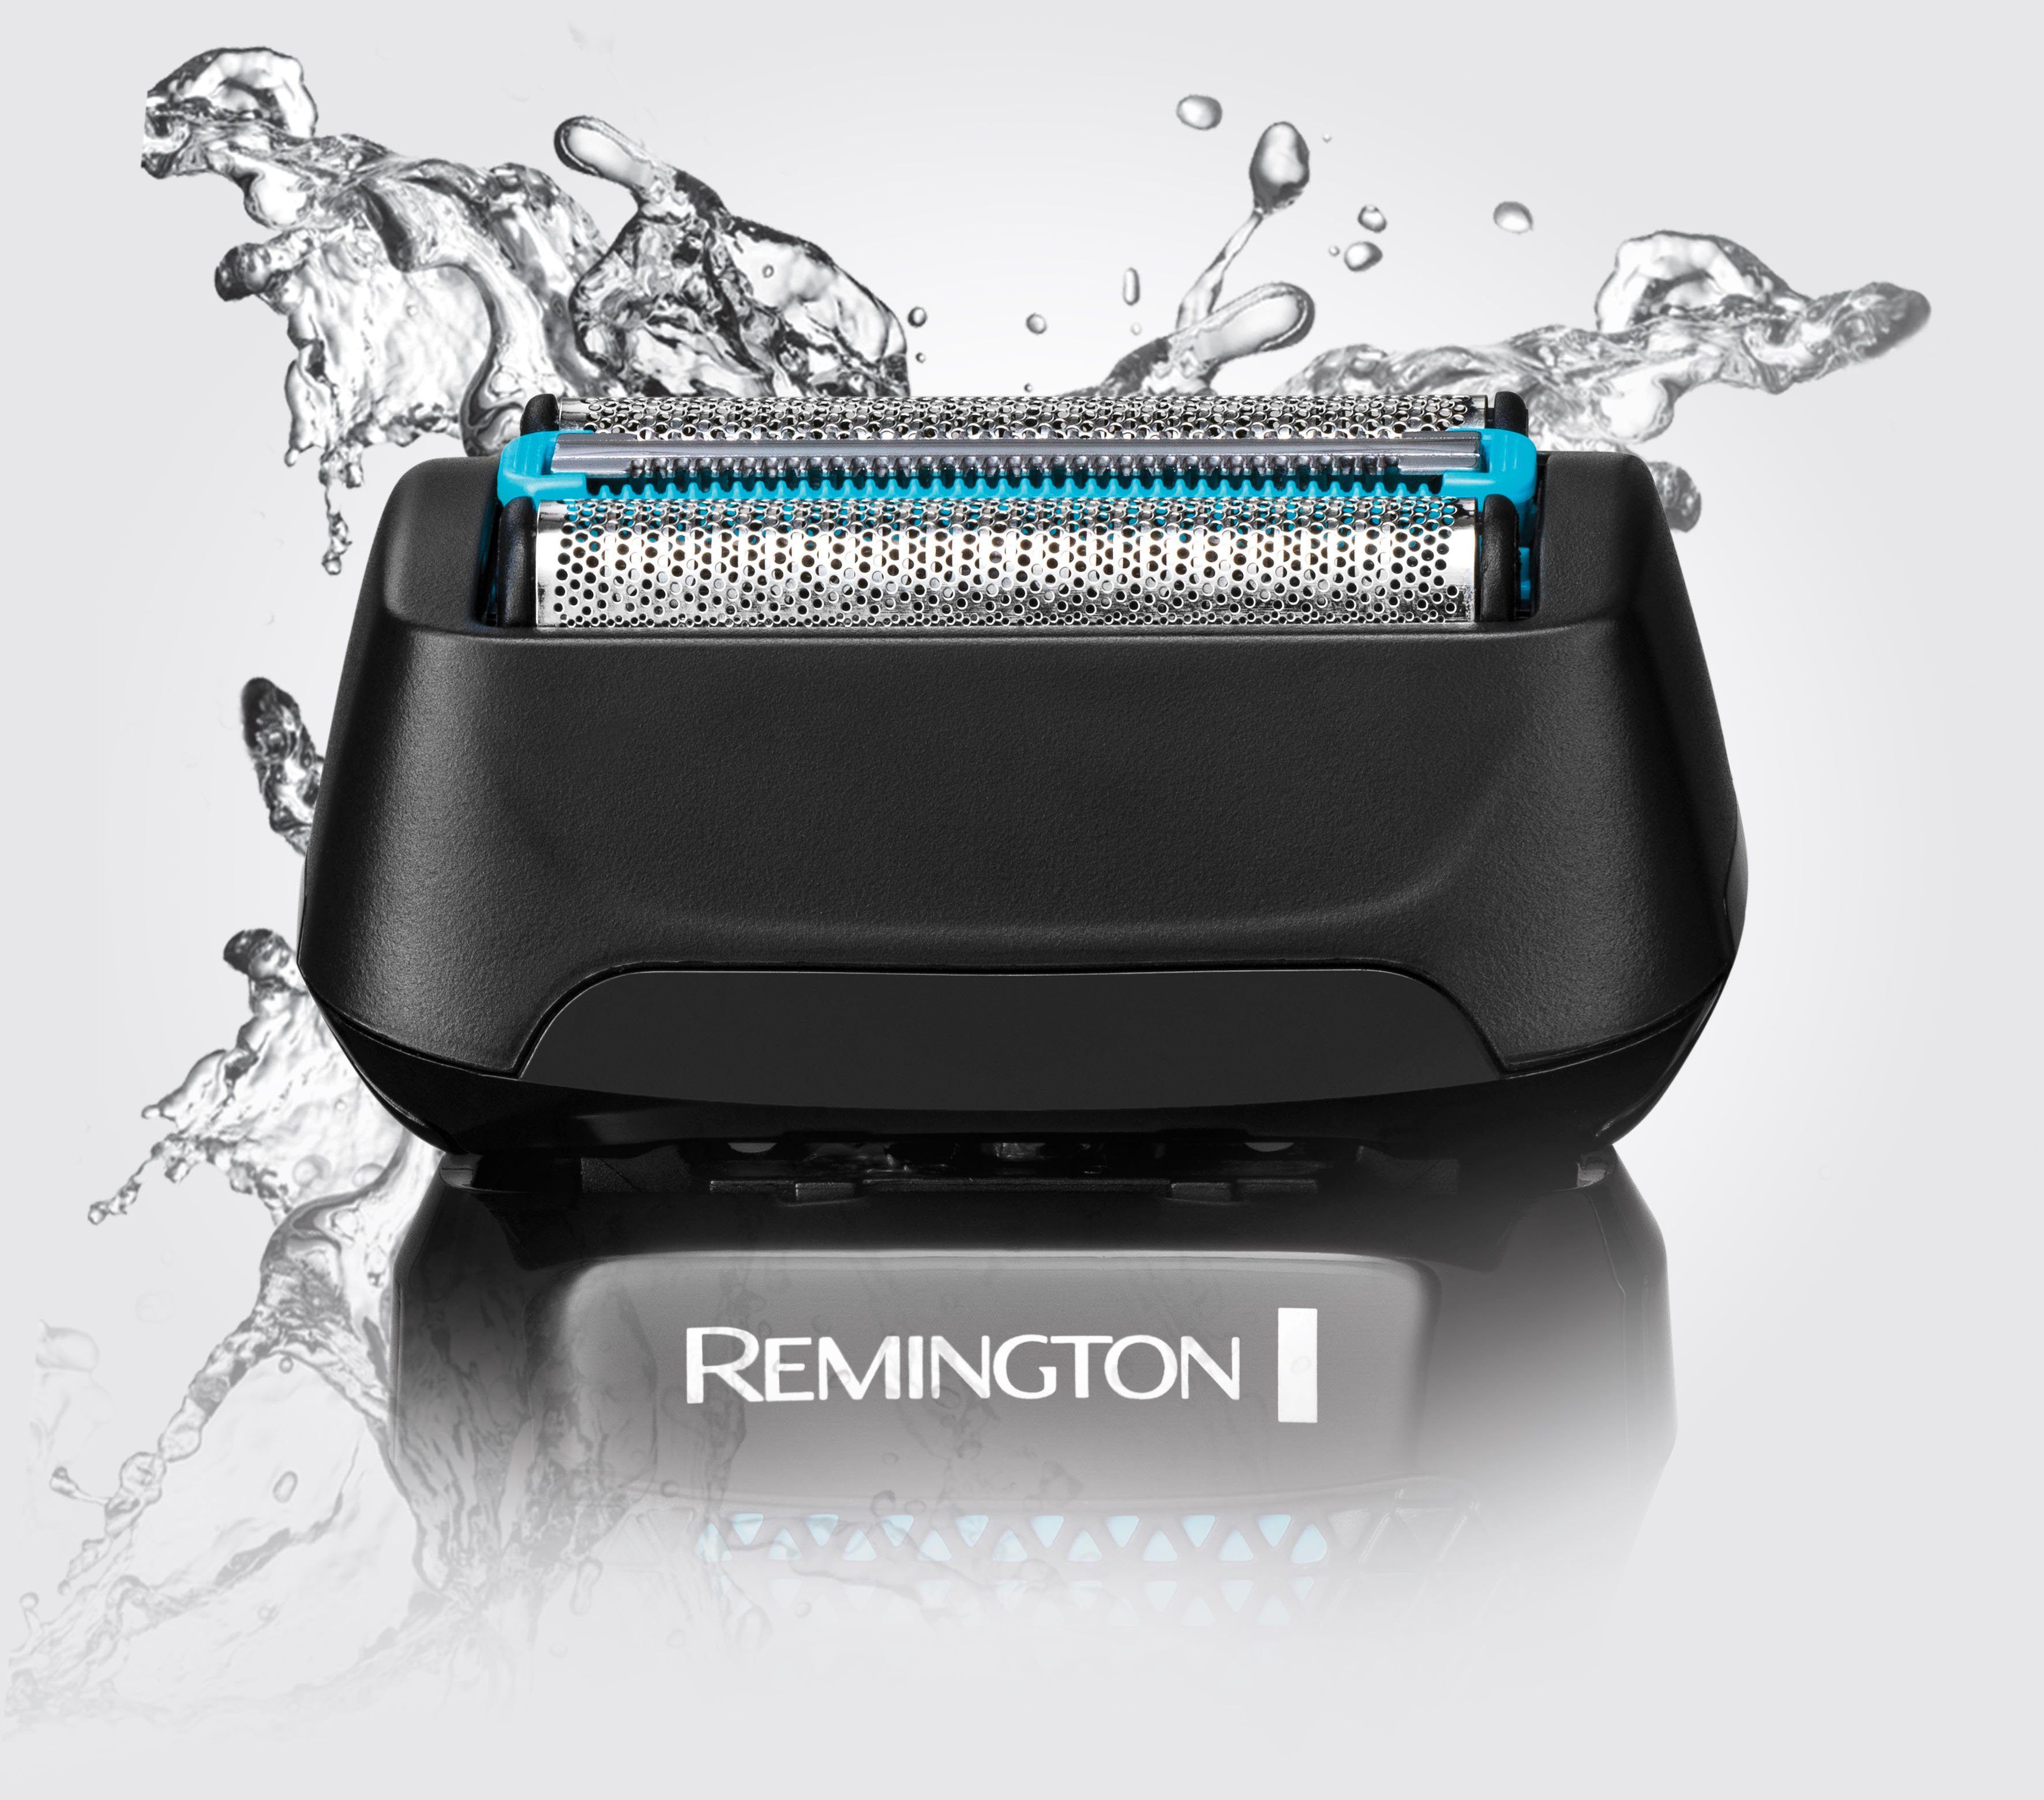 Remington Elektrorasierer 100 % wasserdicht, Nass F6000 Wasserdichtes Langhaartrimmer, Trockenrasur, Styler 3-Tage-Bart Style mit Aufsätze: Rasiersystem, & 1